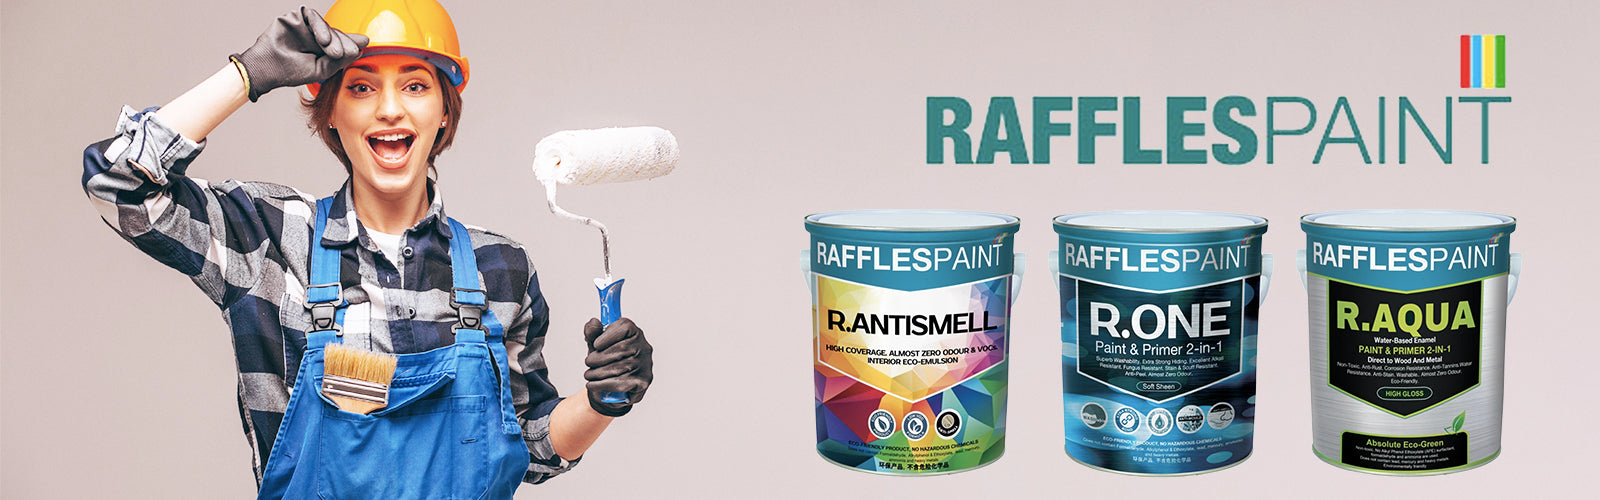 Raffles paint Shop - Singapore's Best Selling Paint Store